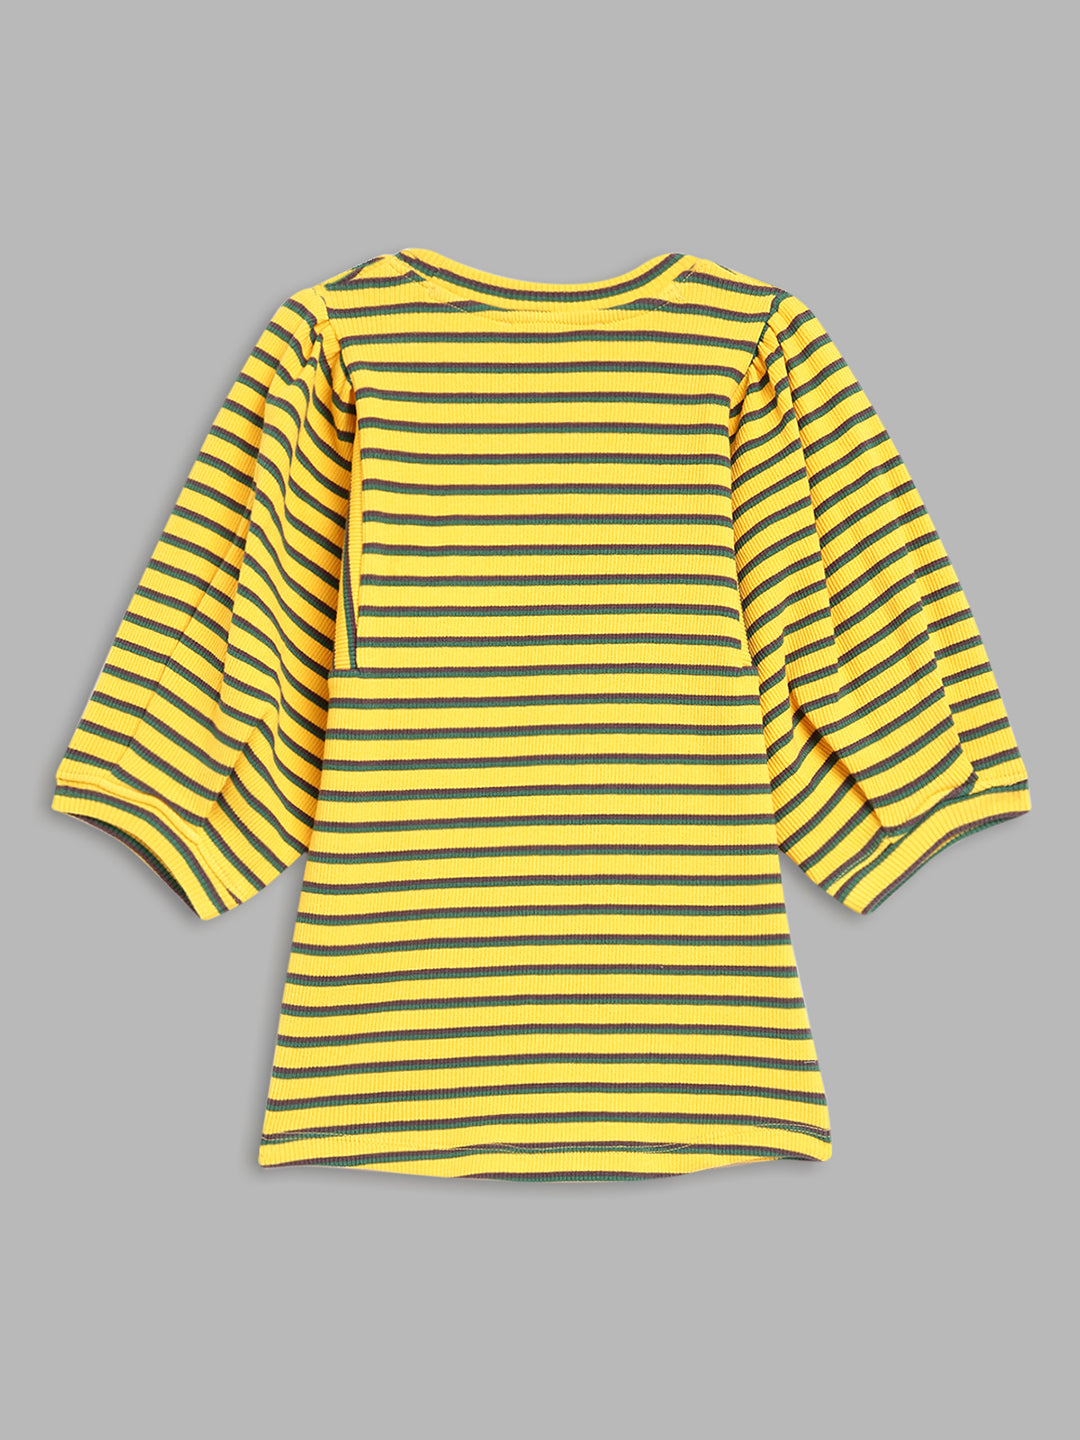 Elle Kids Girls Yellow Striped Round Neck TShirt